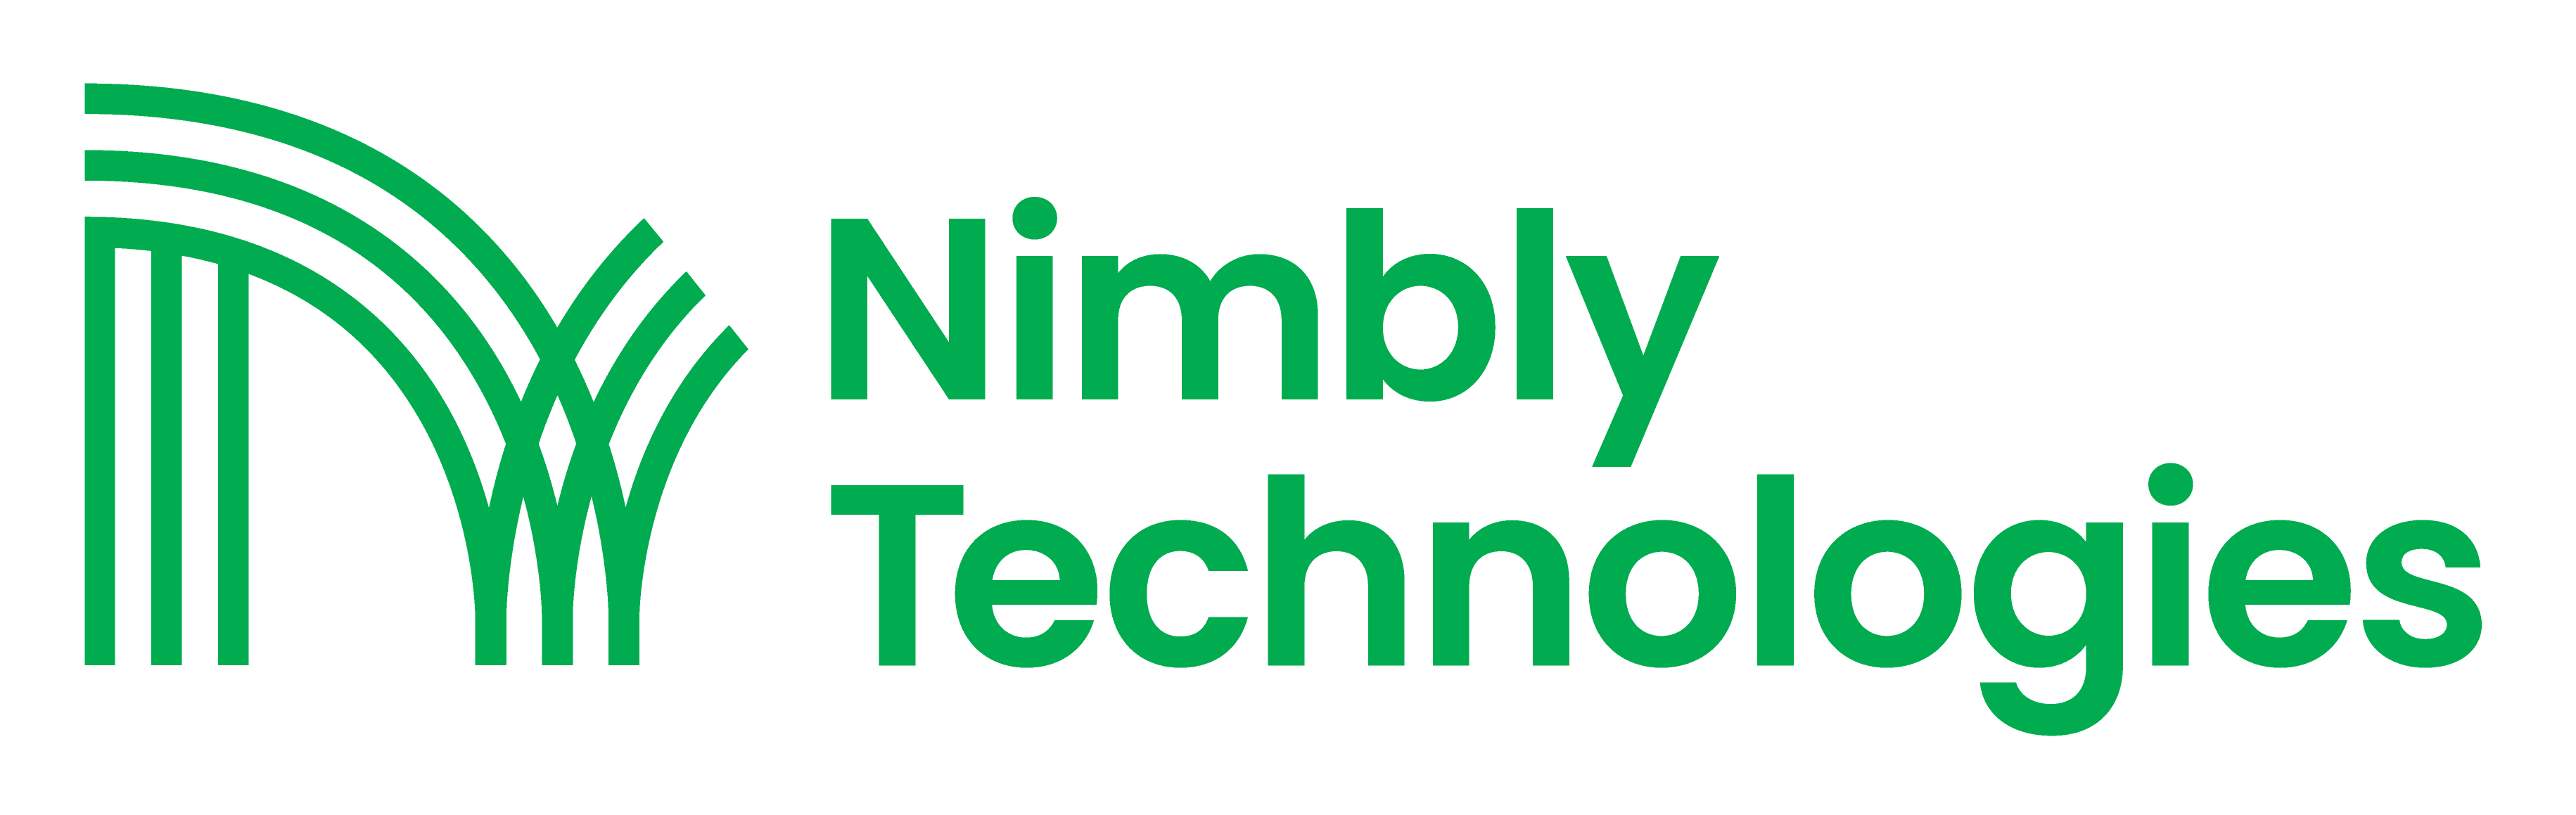 Nimbly Technologies logo